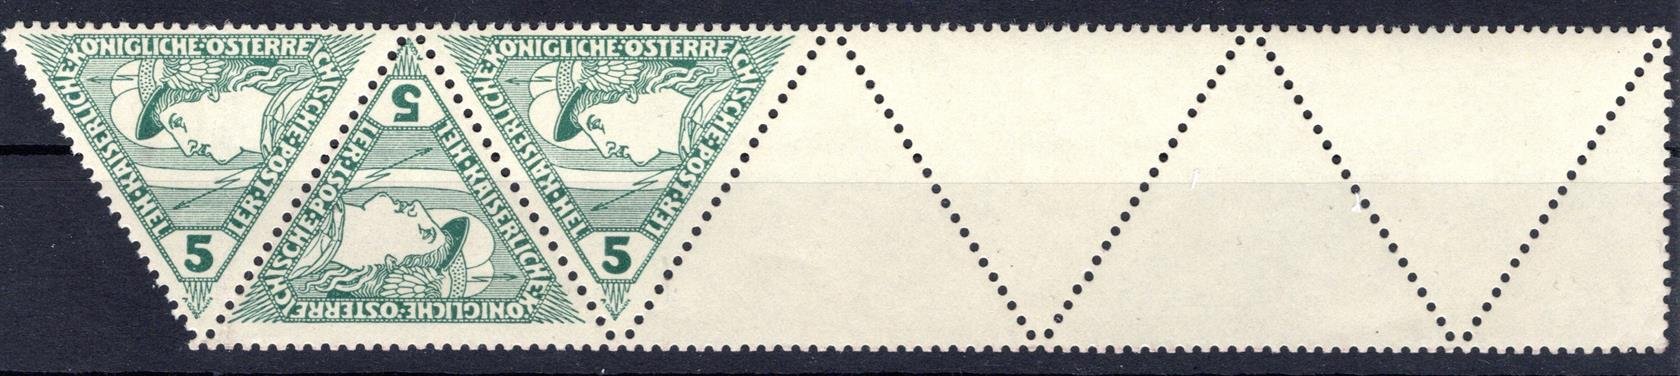 Rakousko - Mi. 218, s 4 1/2 kupony, trojúhelník zelený 5 h, hledané